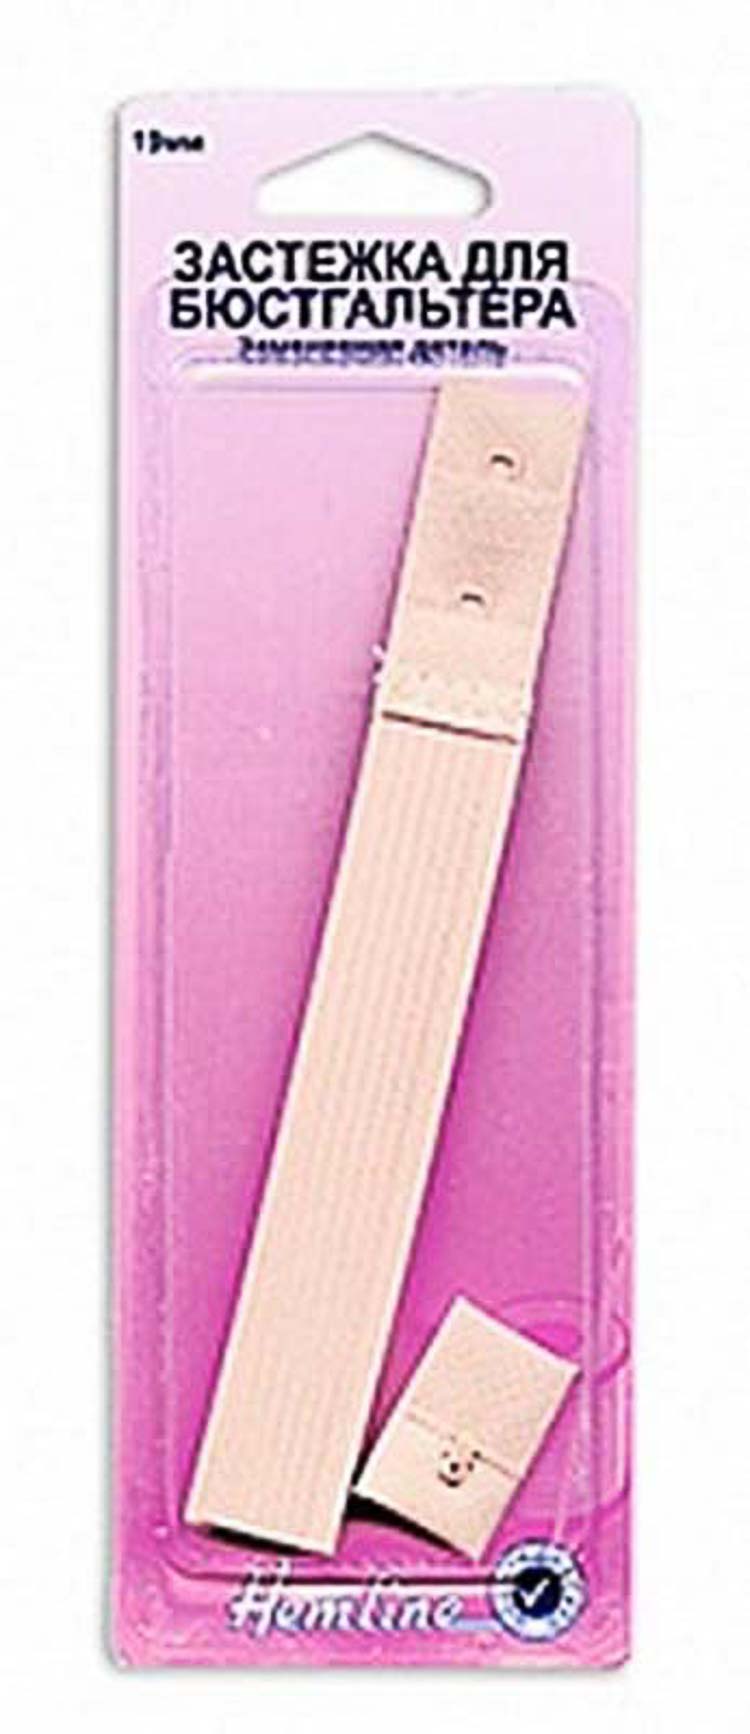 Застежка для изменения объема бюстгалтера "Hemline", 19мм, цвет: бежевый